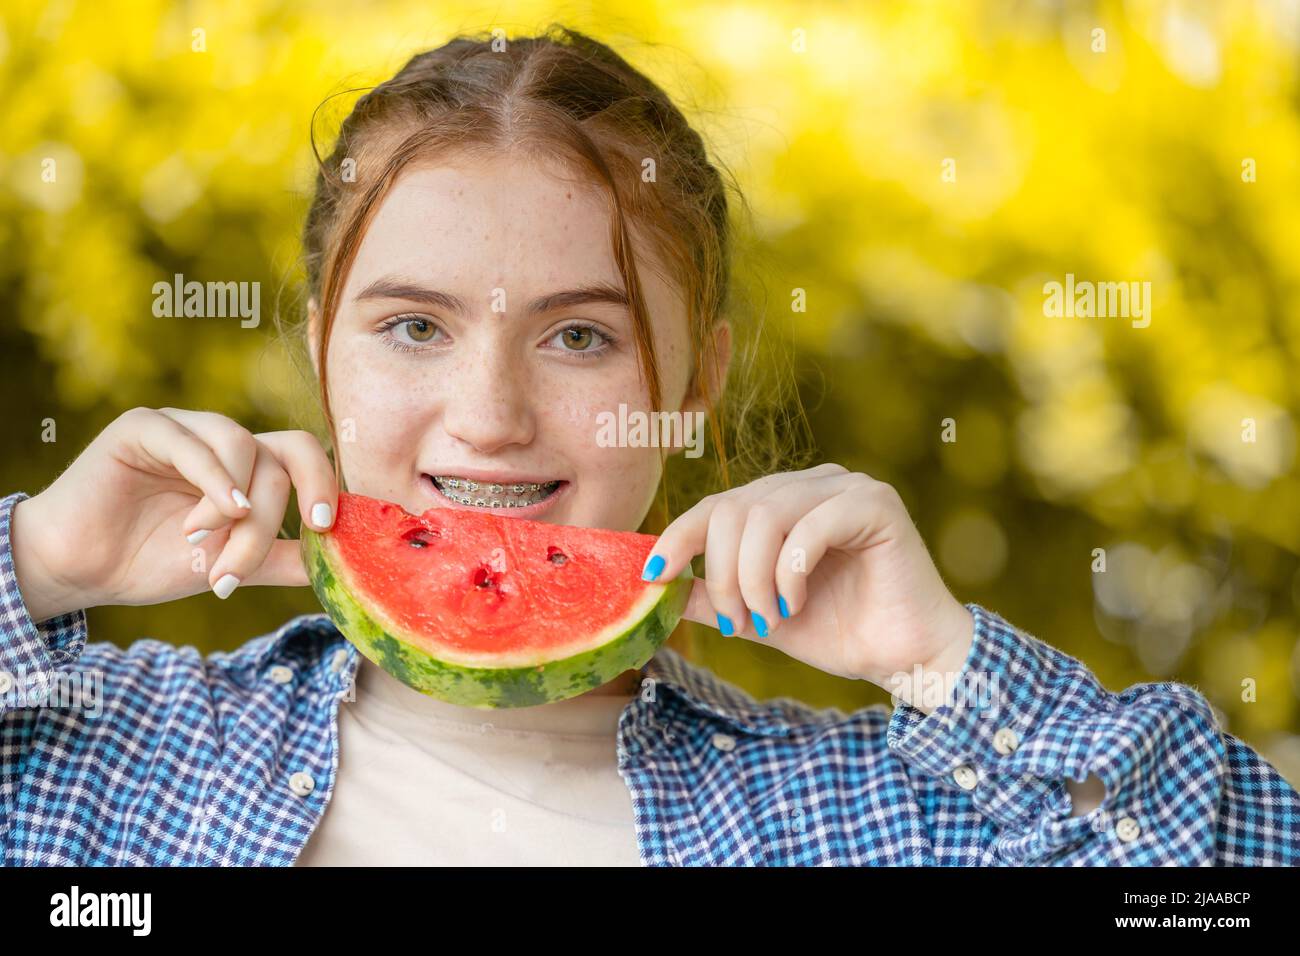 bella ragazza adolescente sorridente con l'anguria e cura dentale denti di trattamento ortodontico allineamento con bretelle o allineatori Foto Stock